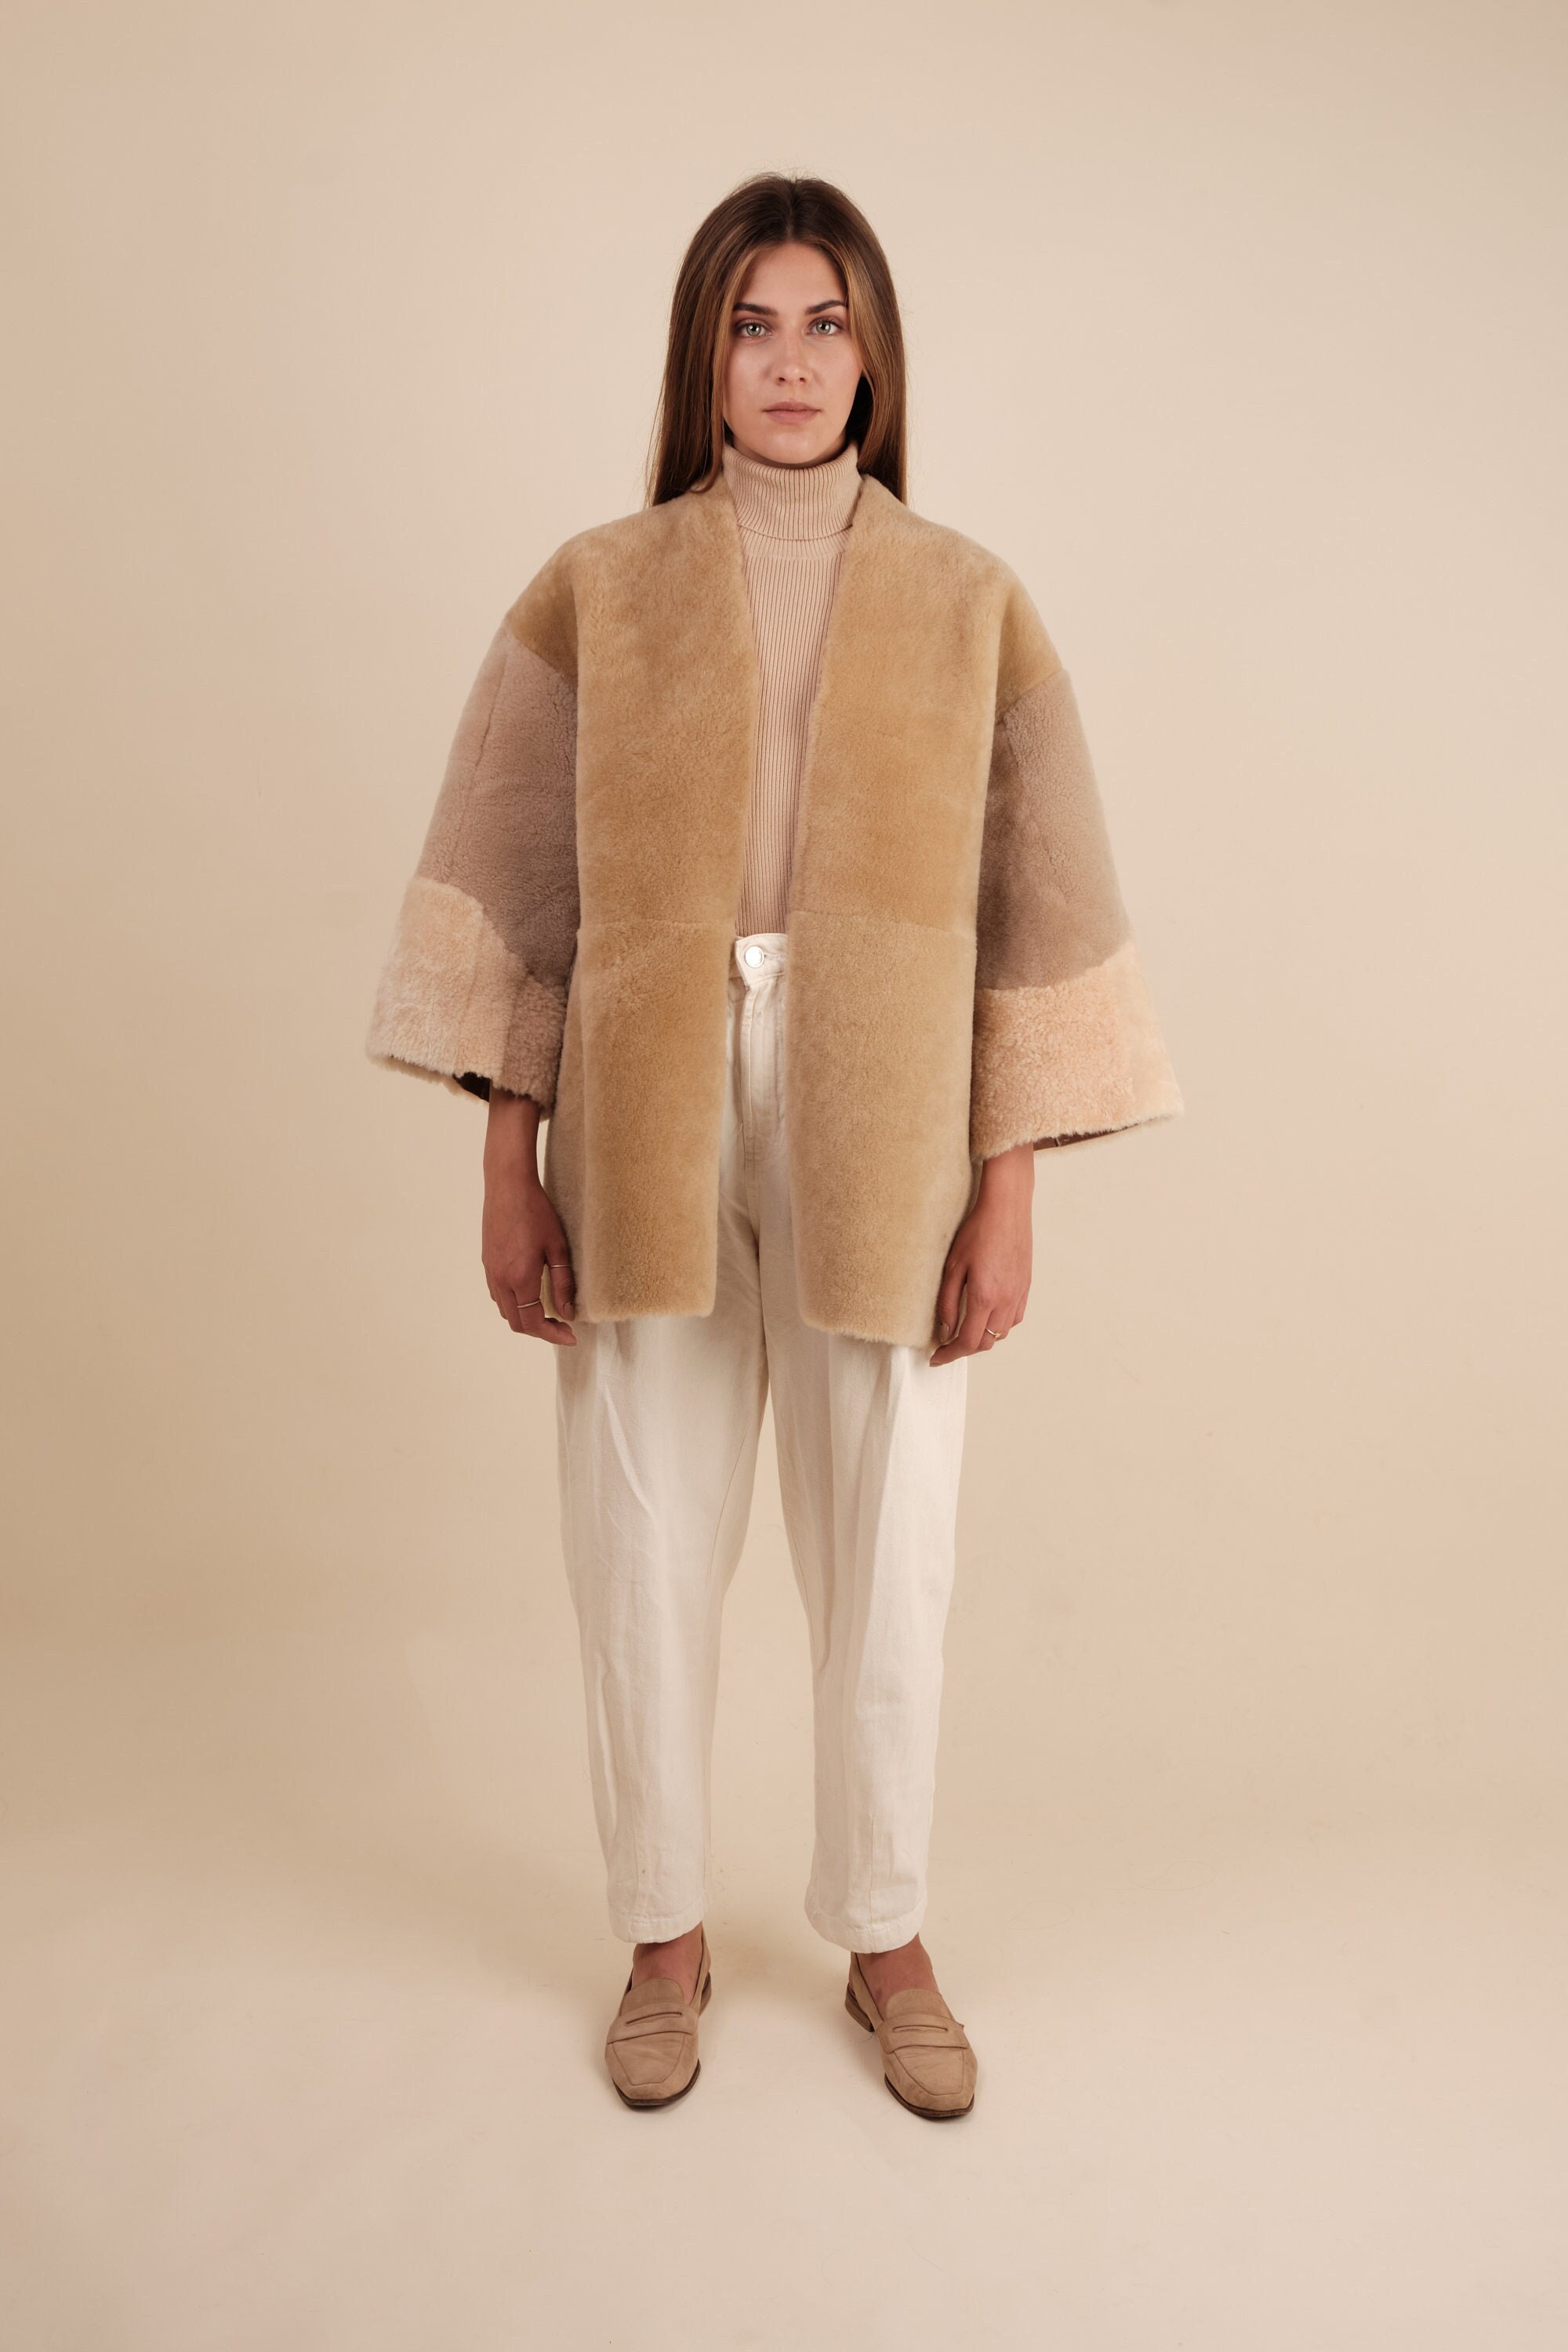 Bespoke Upcycled Vintage Shearling Kimono Jacket 